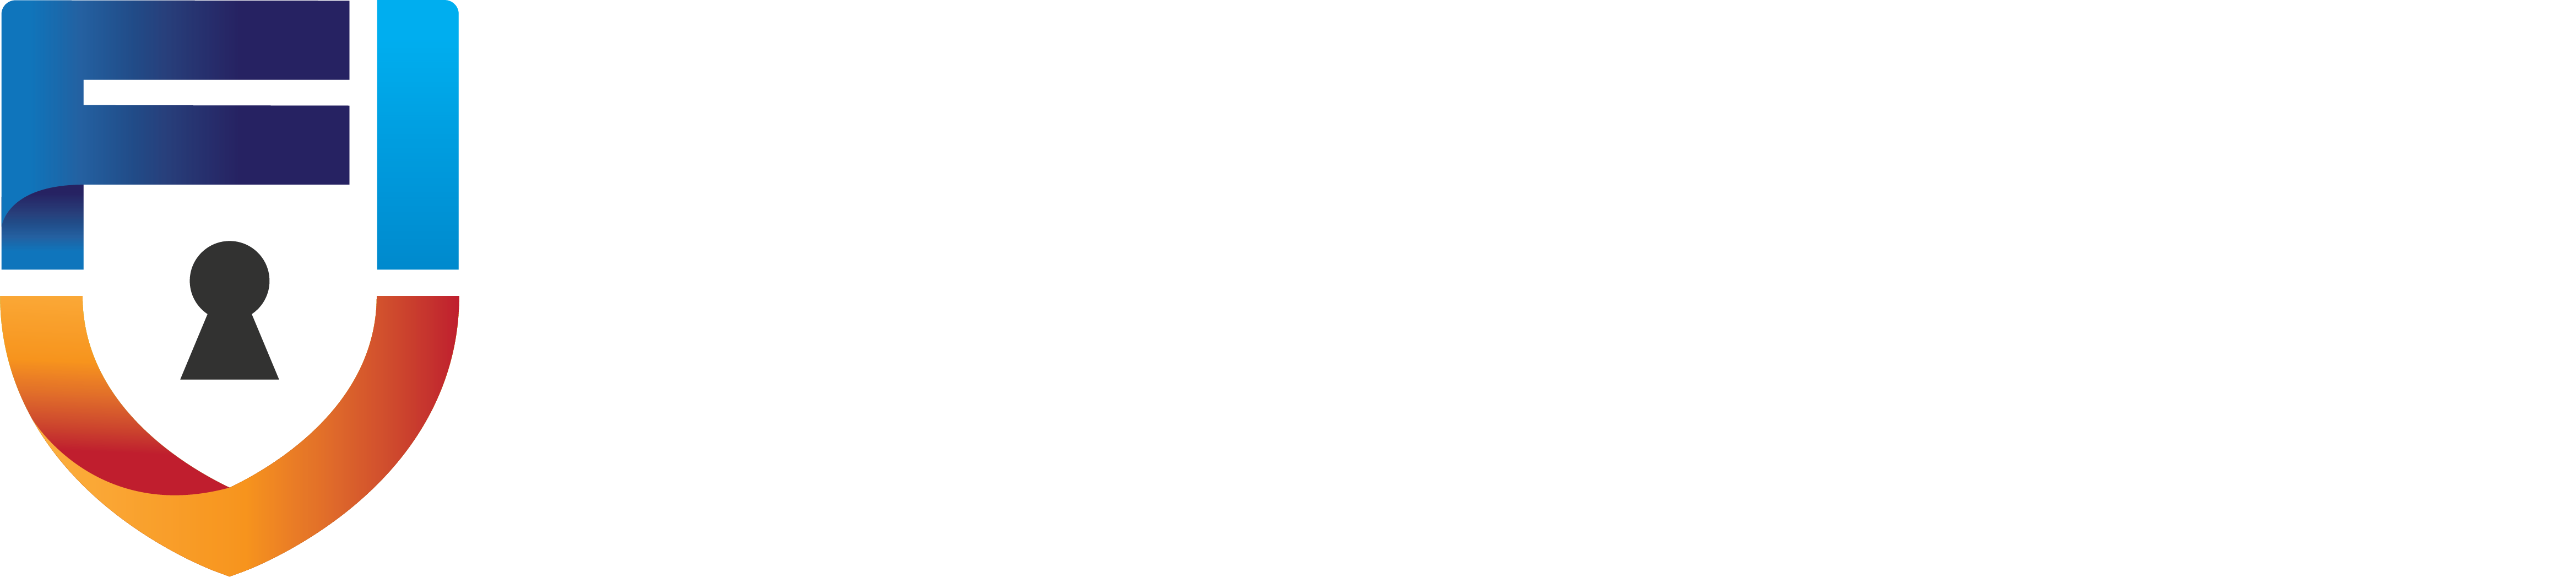 Fischer Identity